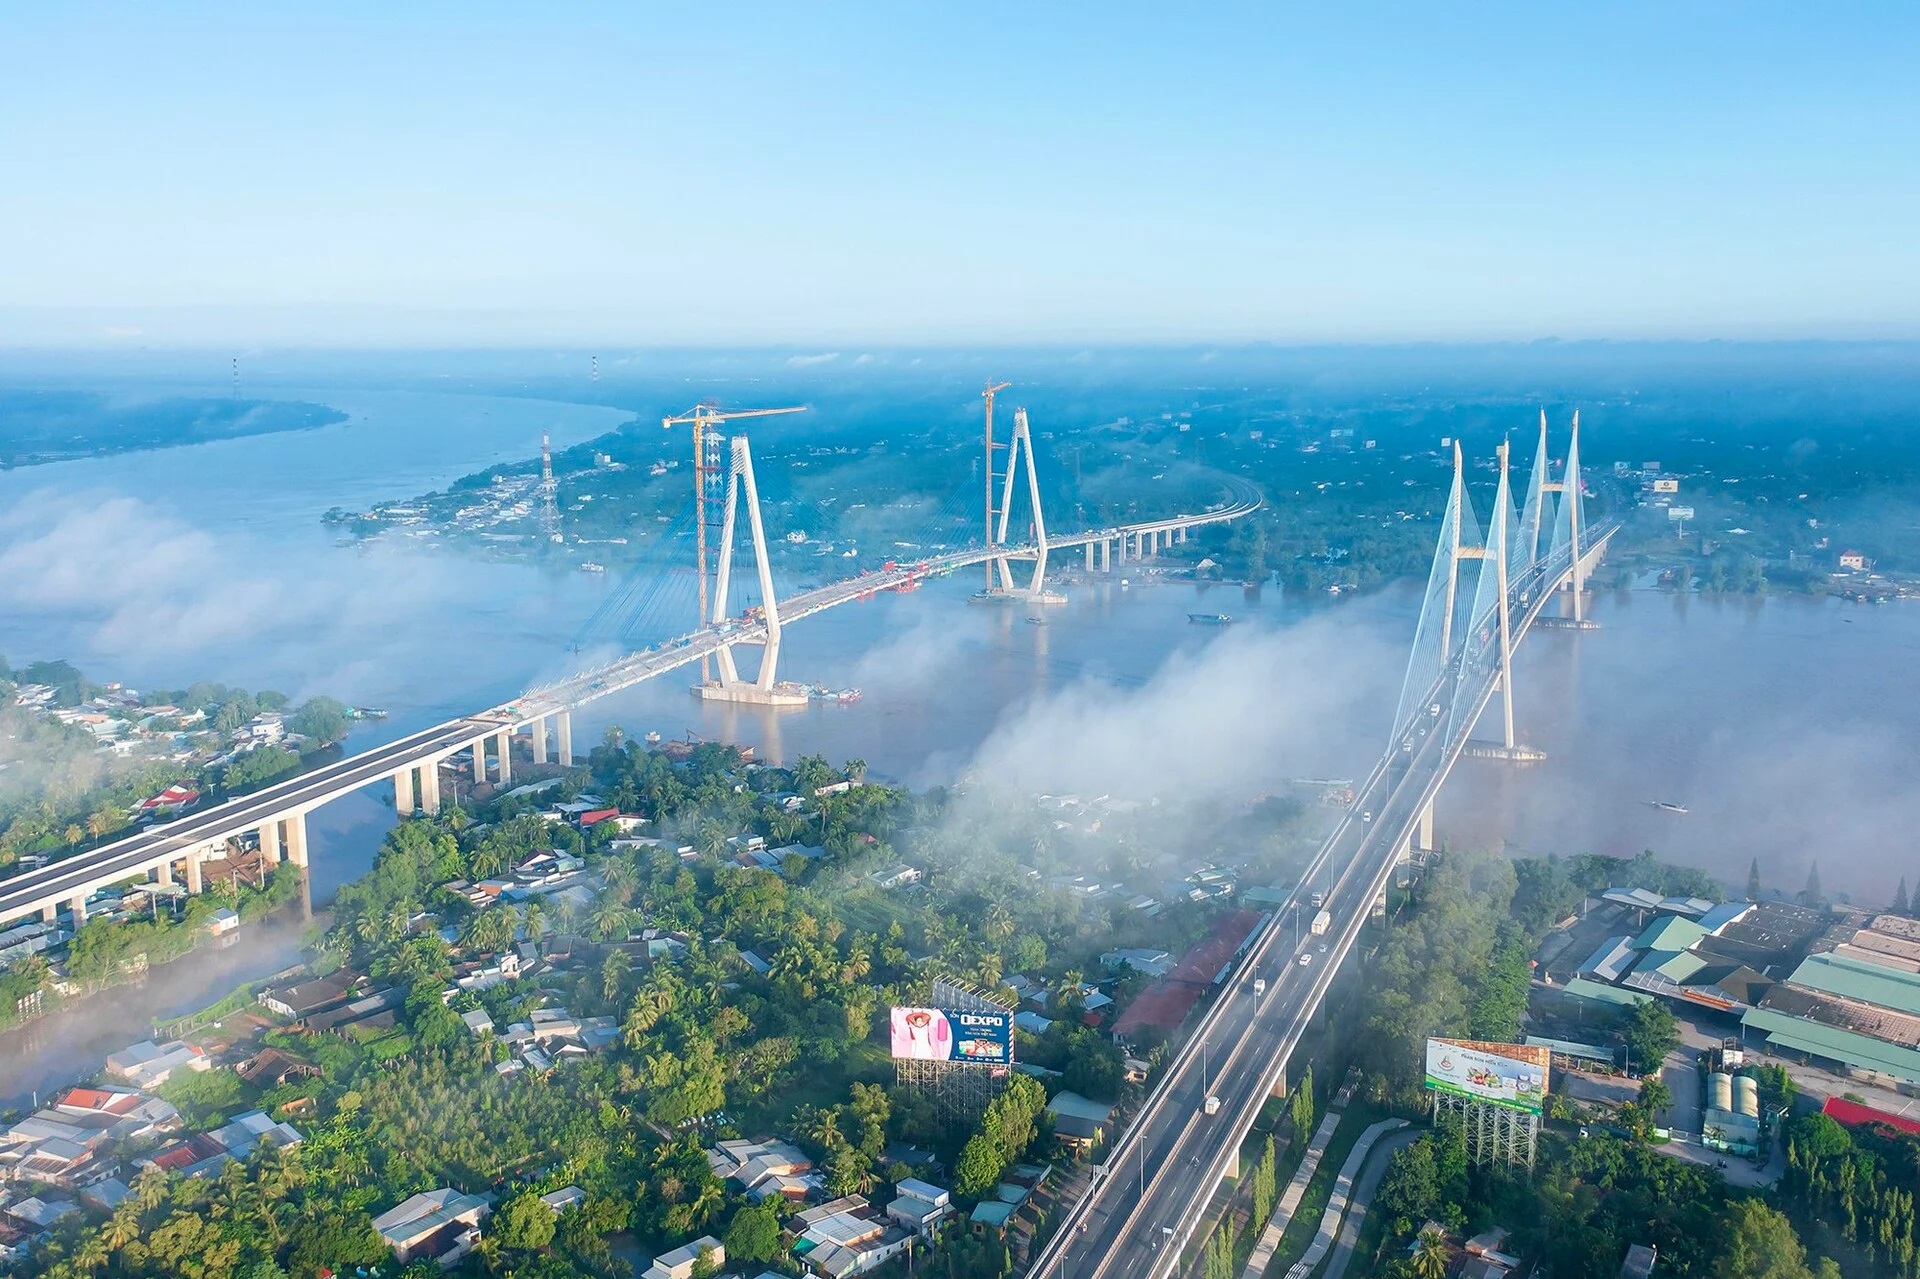 Cầu Mỹ Thuận 2 cũng là một công trình đã từng làm viêc xuyên Tết, đến hôm nay hoàn thành, góp phần hoàn thiện chung hạ tầng giao thông ở khu vực ĐBSCL